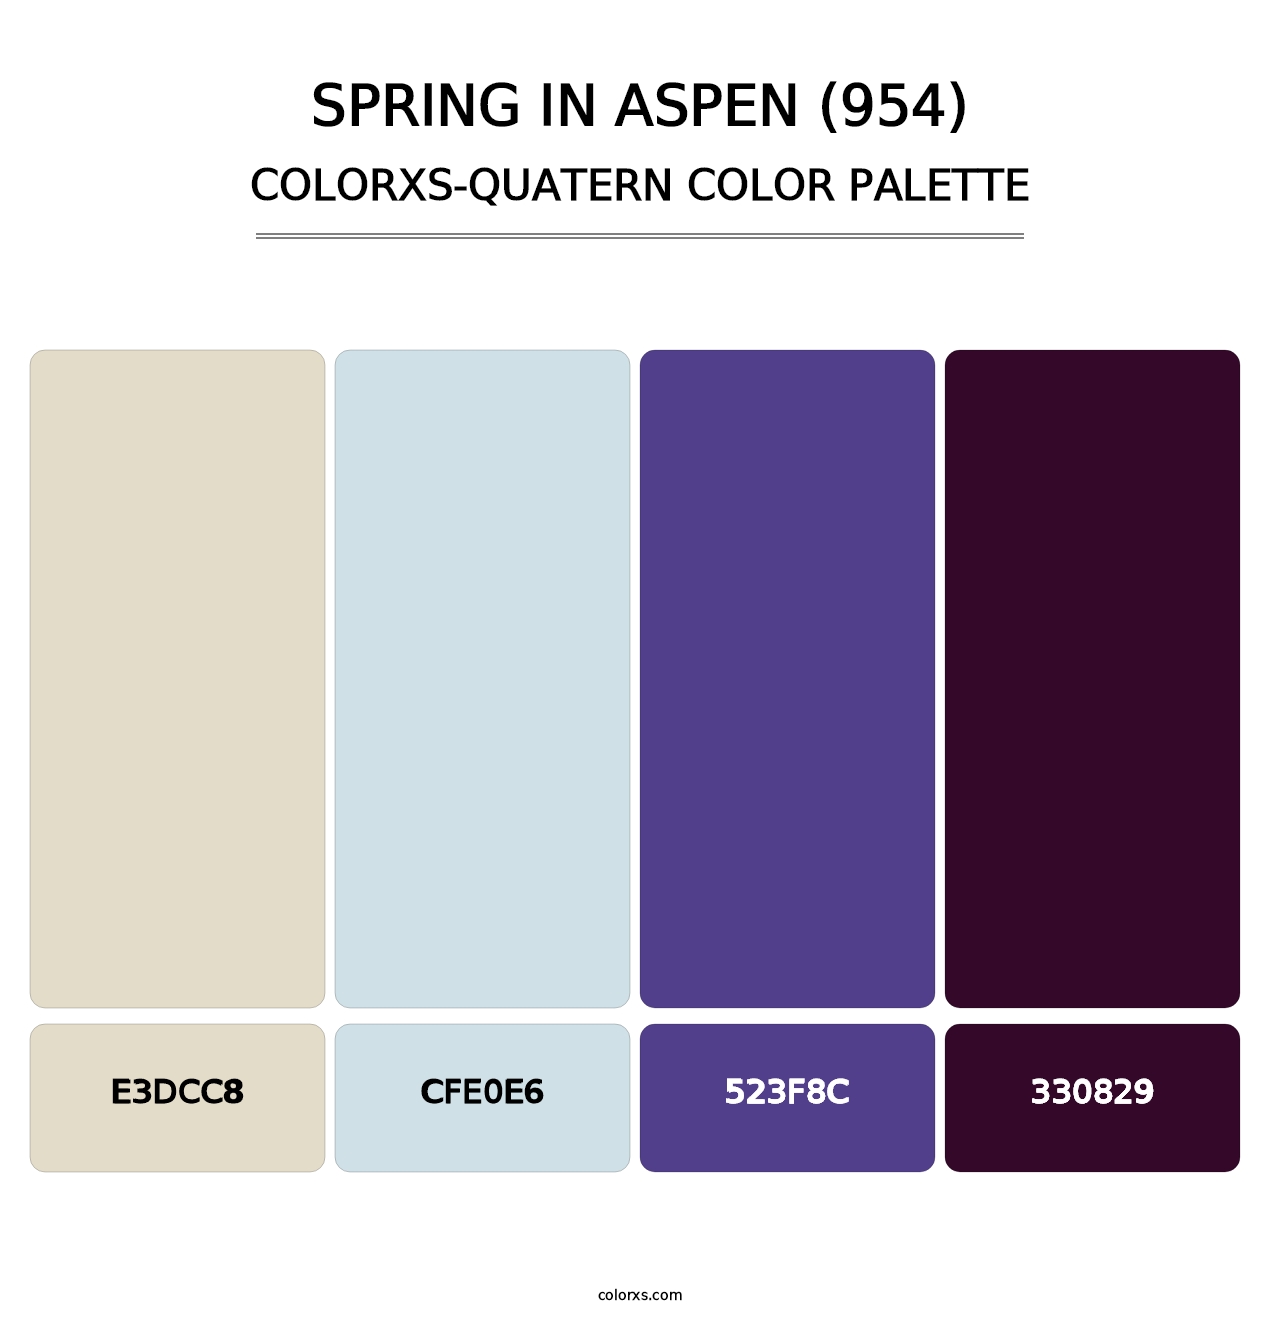 Spring in Aspen (954) - Colorxs Quatern Palette